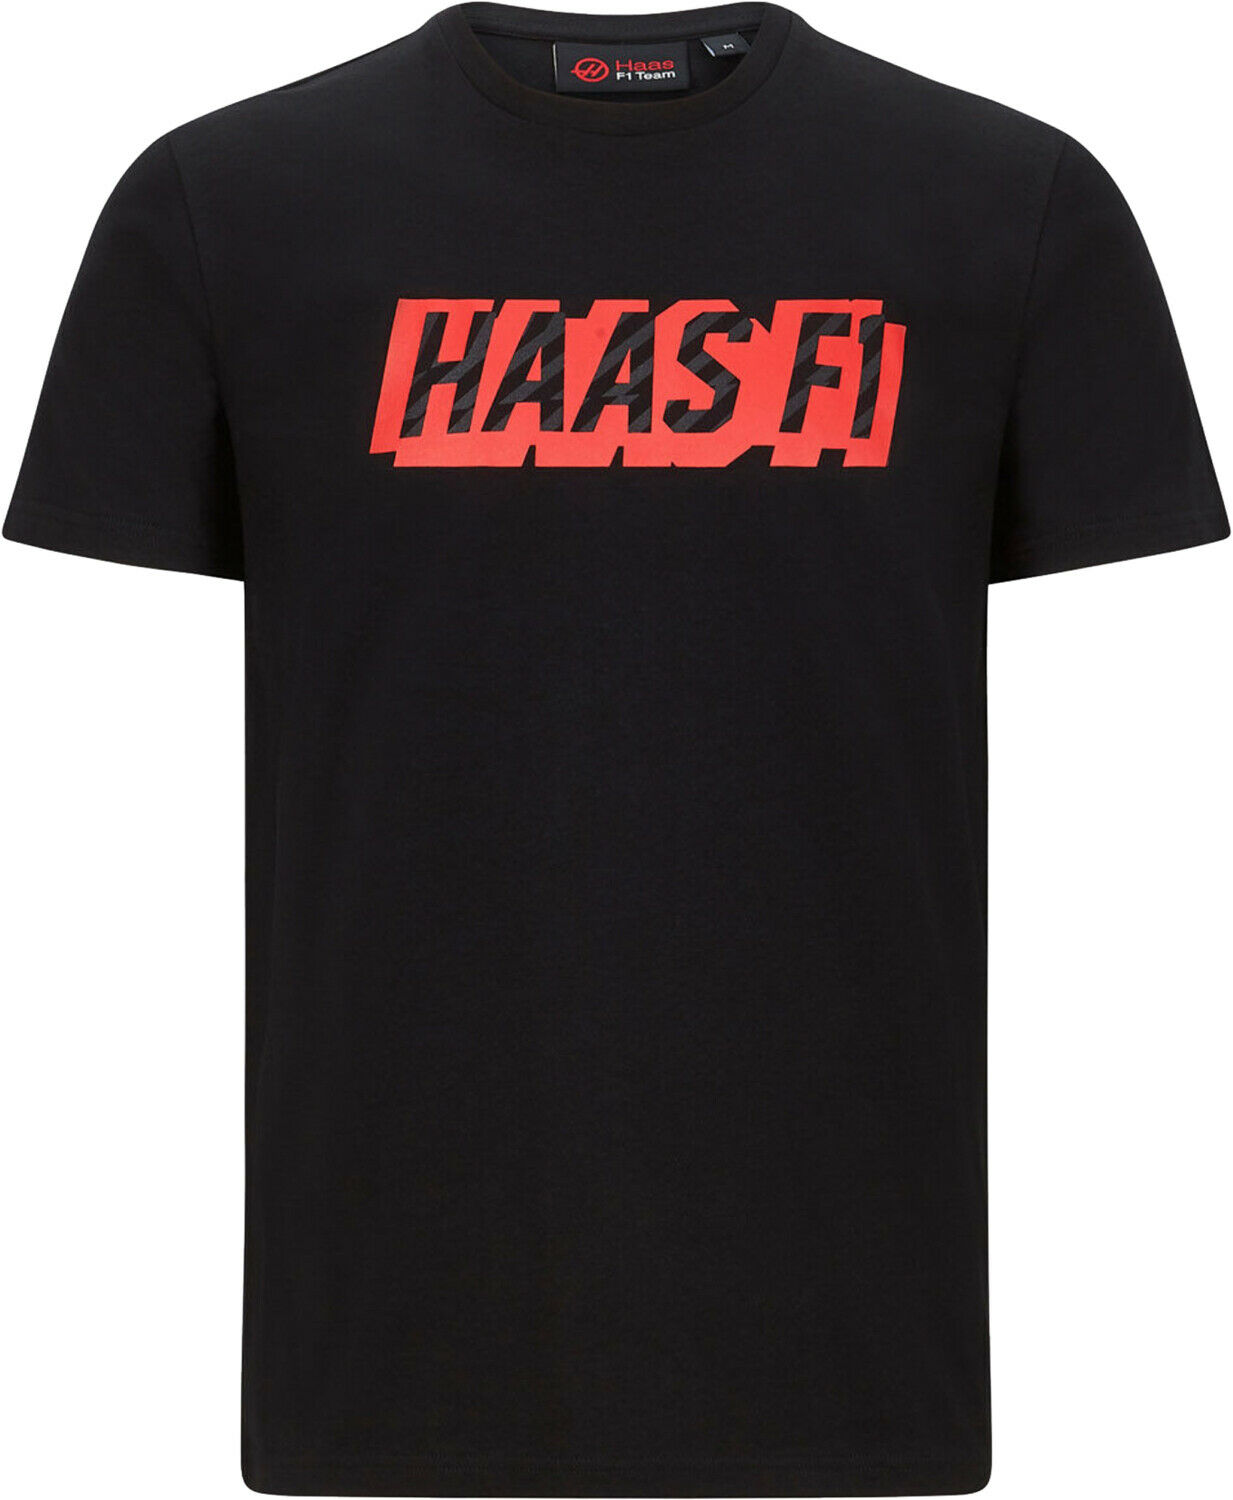 Haas F1 Team Formula One USA LOGO T-shirt ハース F1 チーム グラフィック Tシャツ 半袖 ブラック